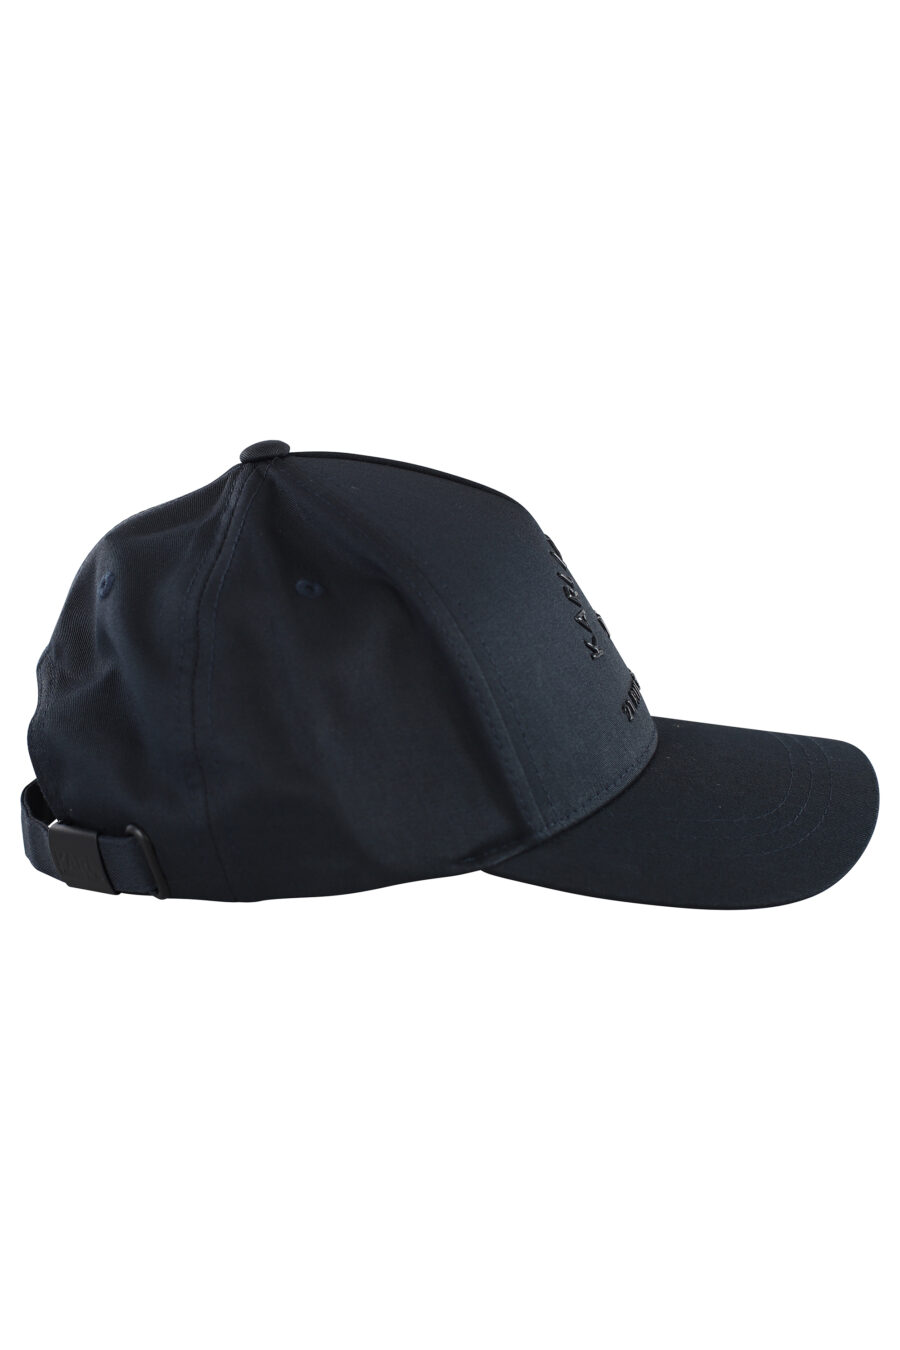 Gorra azul oscuro con logo monocromático - IMG 7056